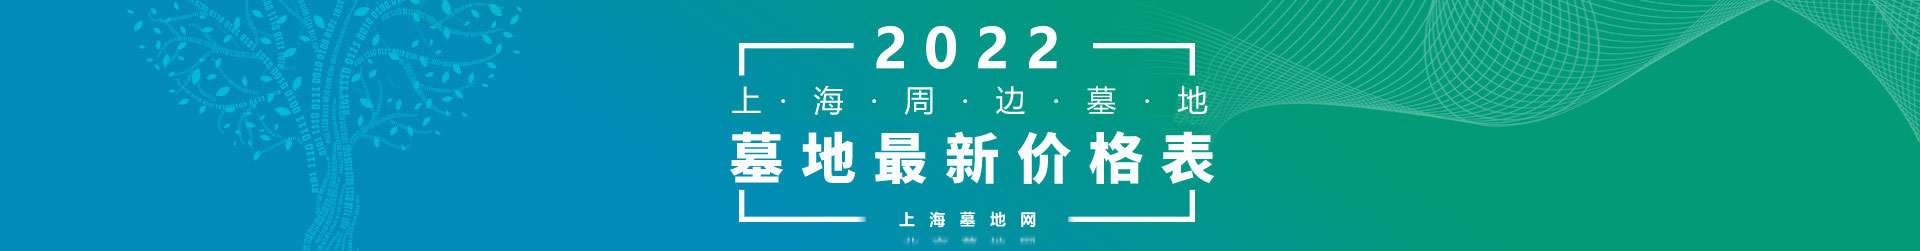 2022年上海及周边墓地最近价格表